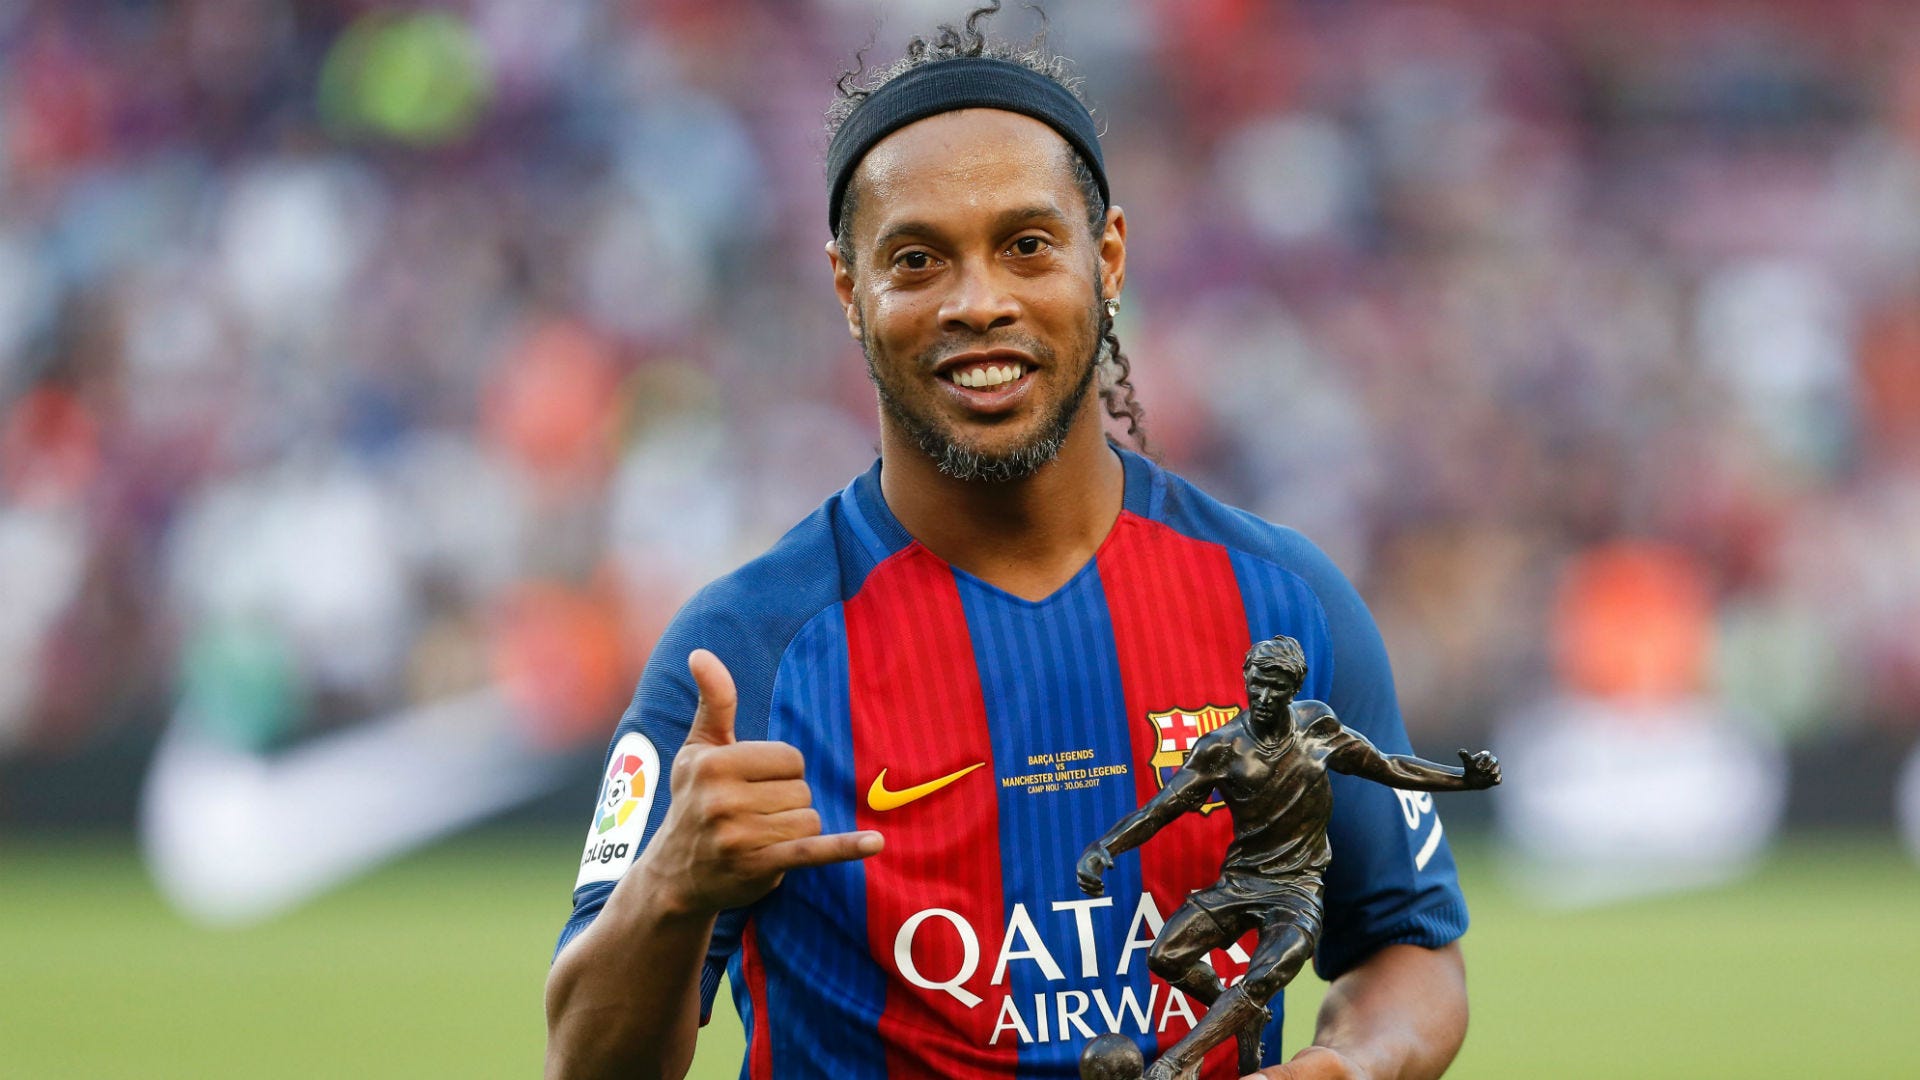 CHÍNH THỨC: Ronaldinho từ giã sự nghiệp quần đùi áo số | Goal.com Việt Nam